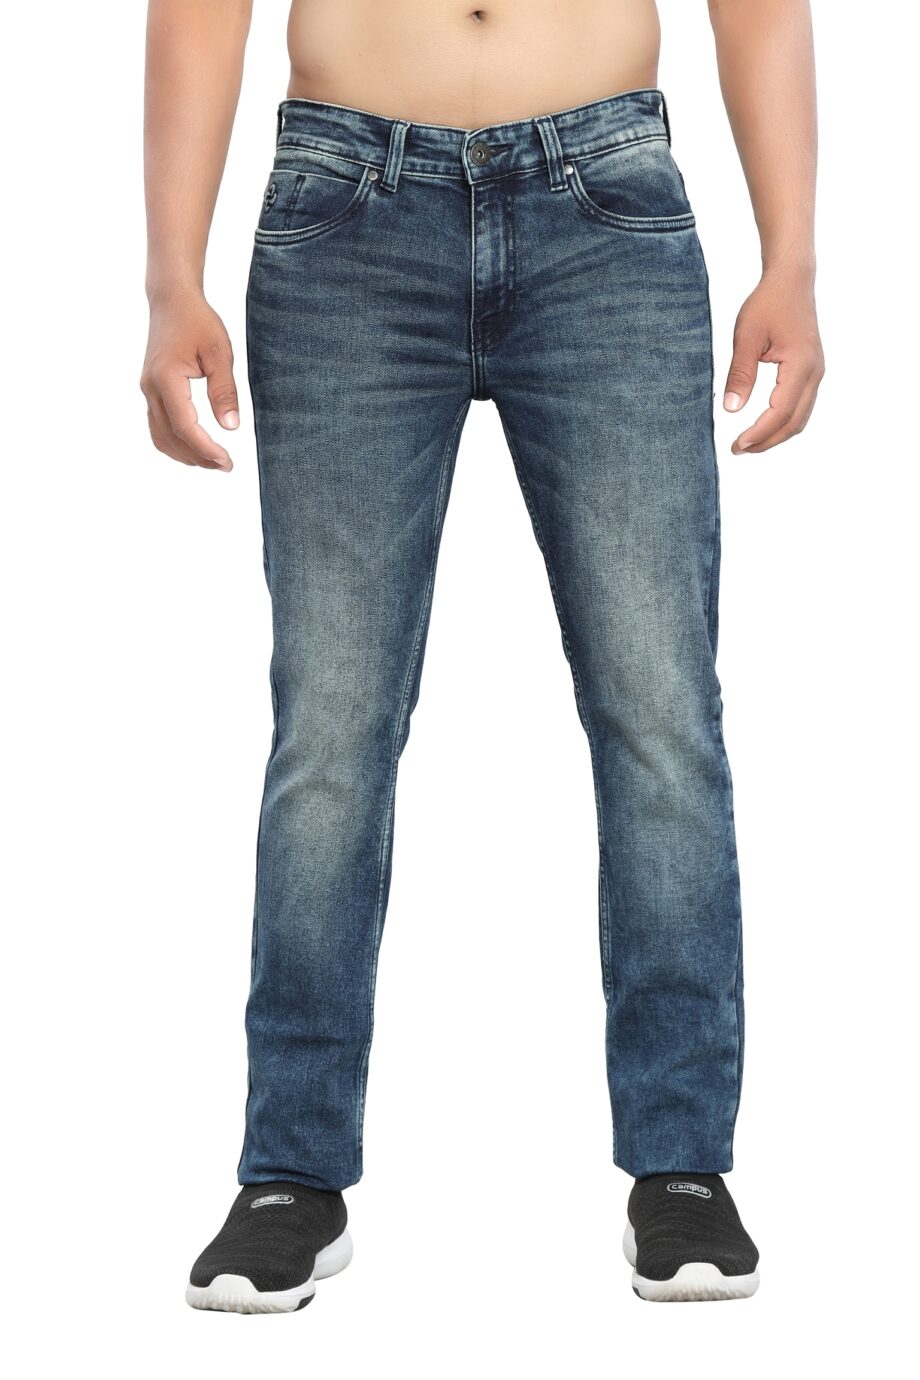 Stretchable blue denim jeans for men